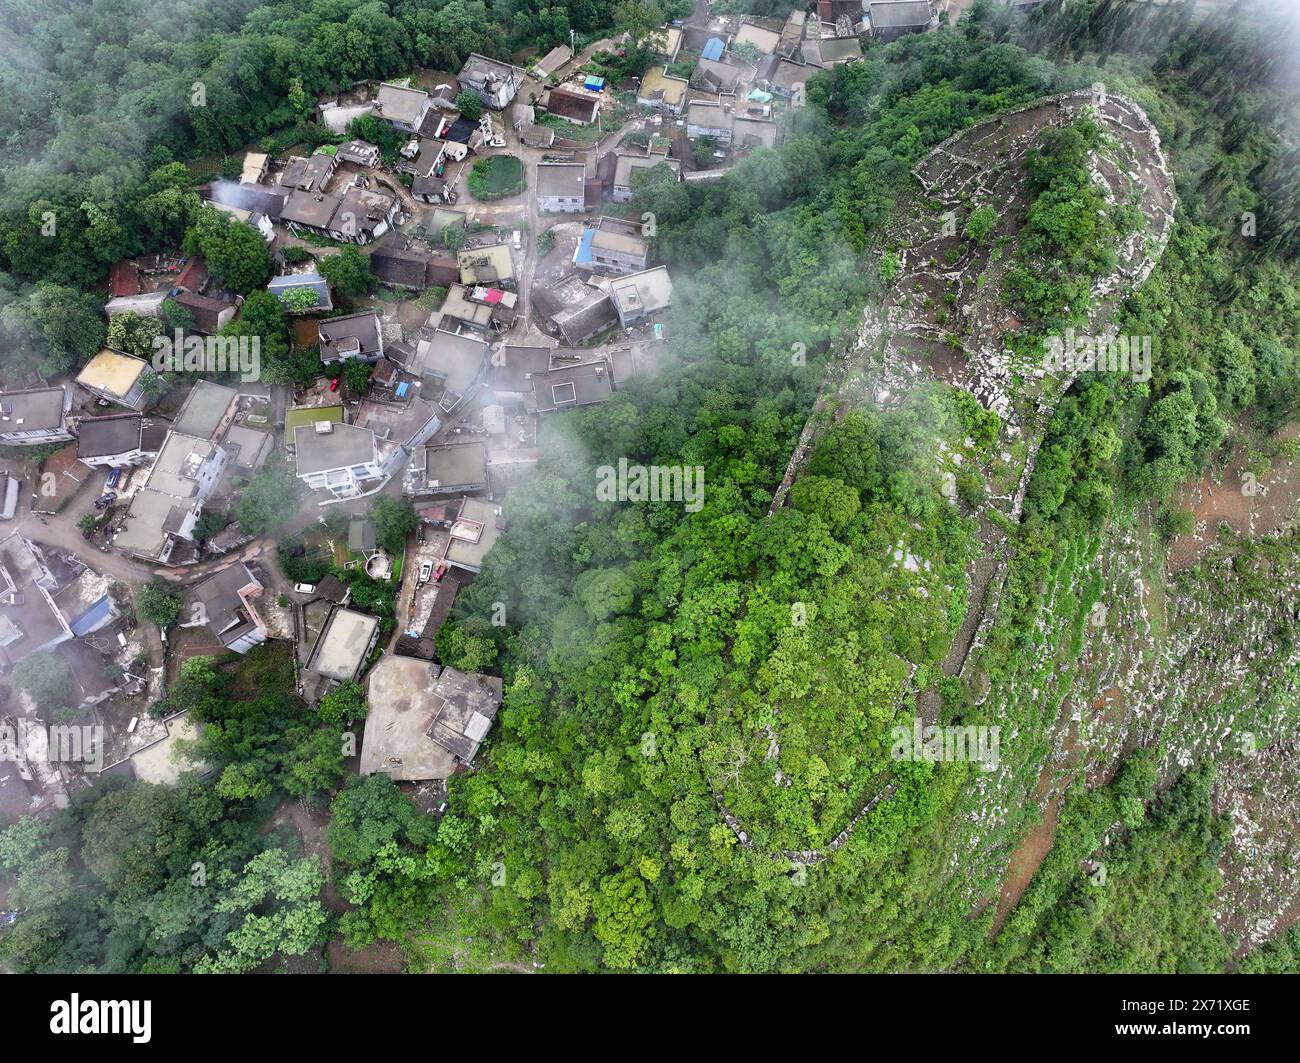 Qianxinan. 17 mai 2024. Une photo prise par un drone aérien le 17 mai 2024 montre une vue des ruines d'une ancienne ville datant de la dynastie Ming (1368-1644) au village de Pingzhai de la préfecture autonome de Bouyei-Miao de Qianxinan, dans la province du Guizhou au sud-ouest de la Chine. Le site apparaît de forme ovale vu d'en haut, couvrant une superficie d'environ 18 000 mètres carrés, avec plus de 900 mètres de murs de pierre restés. Crédit : Liu Xu/Xinhua/Alamy Live News Banque D'Images